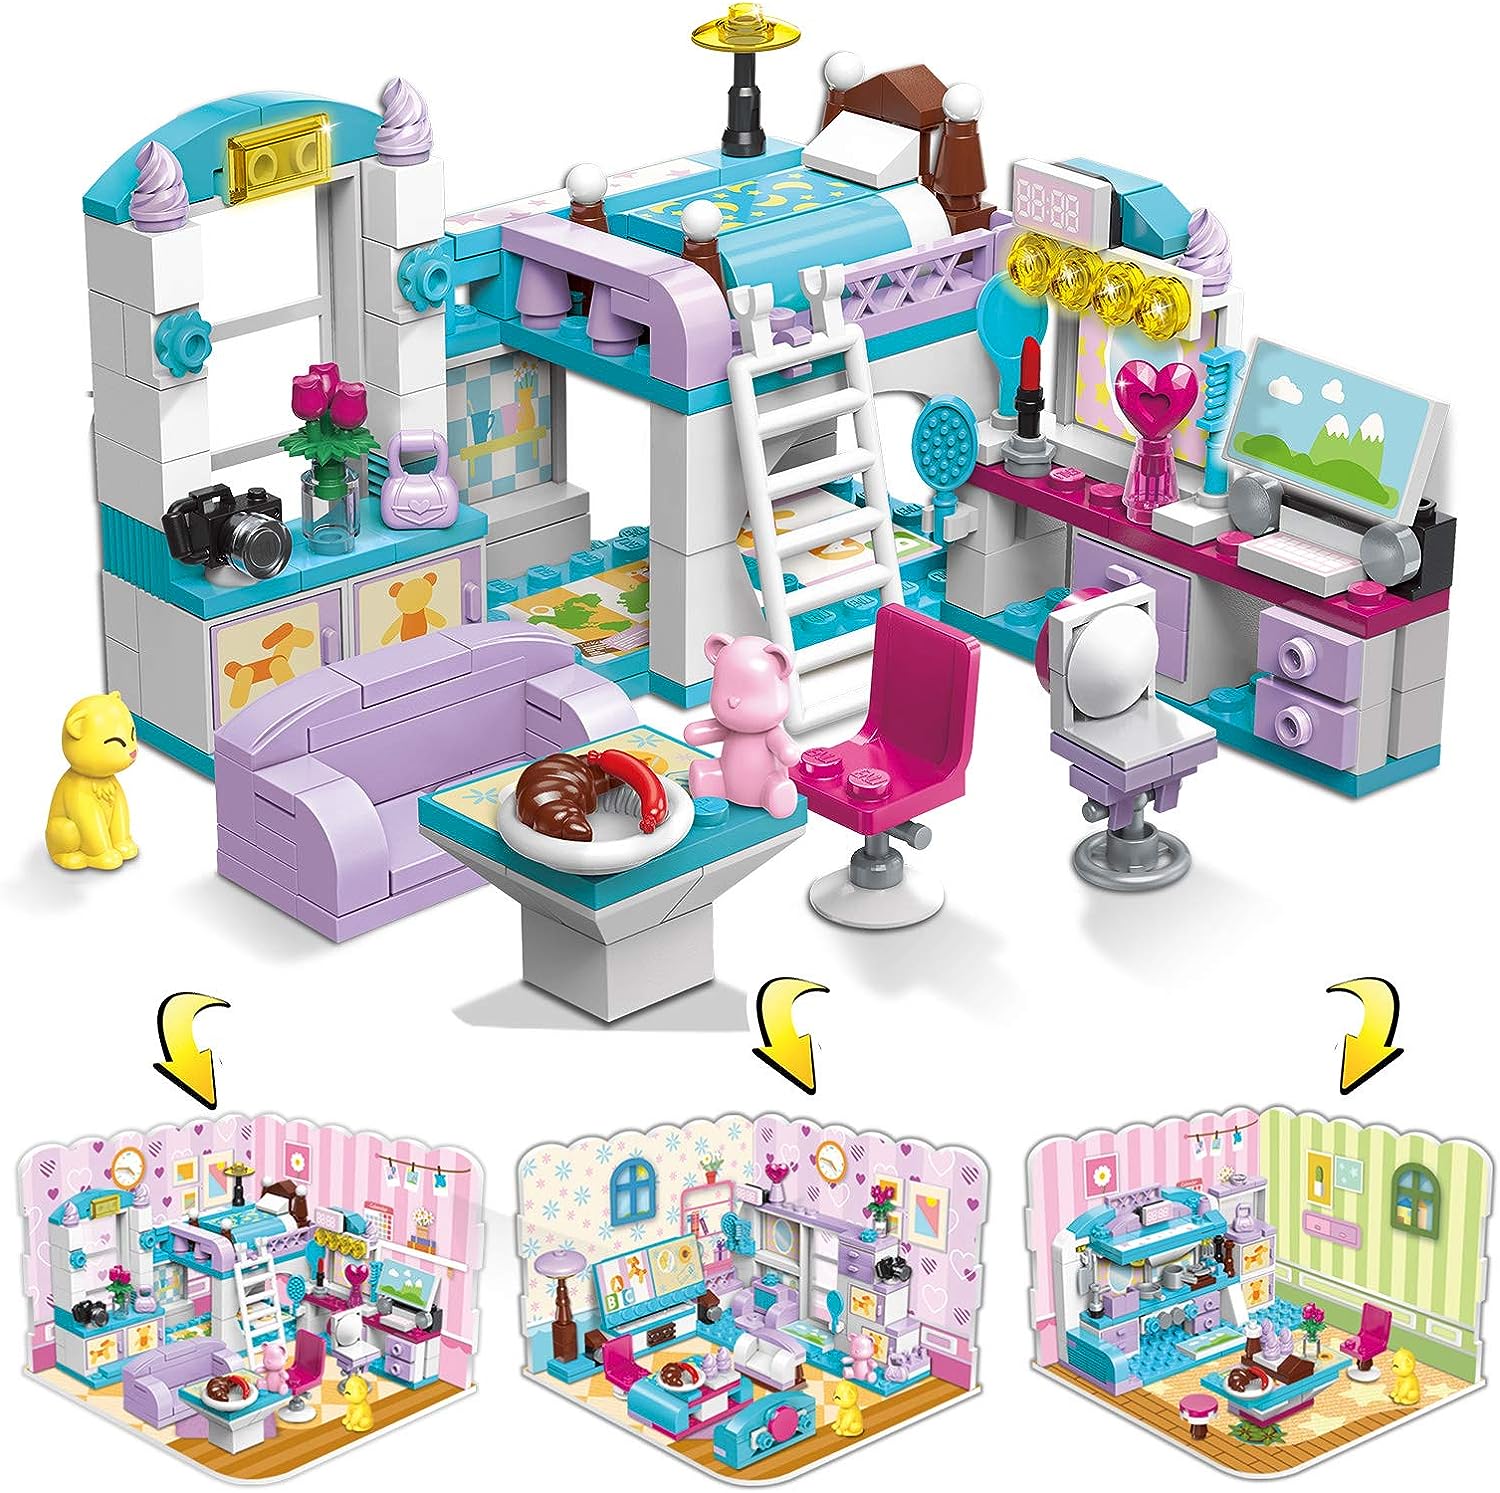 Lego-Qman-Unlimited Ideas-Girls Room-1